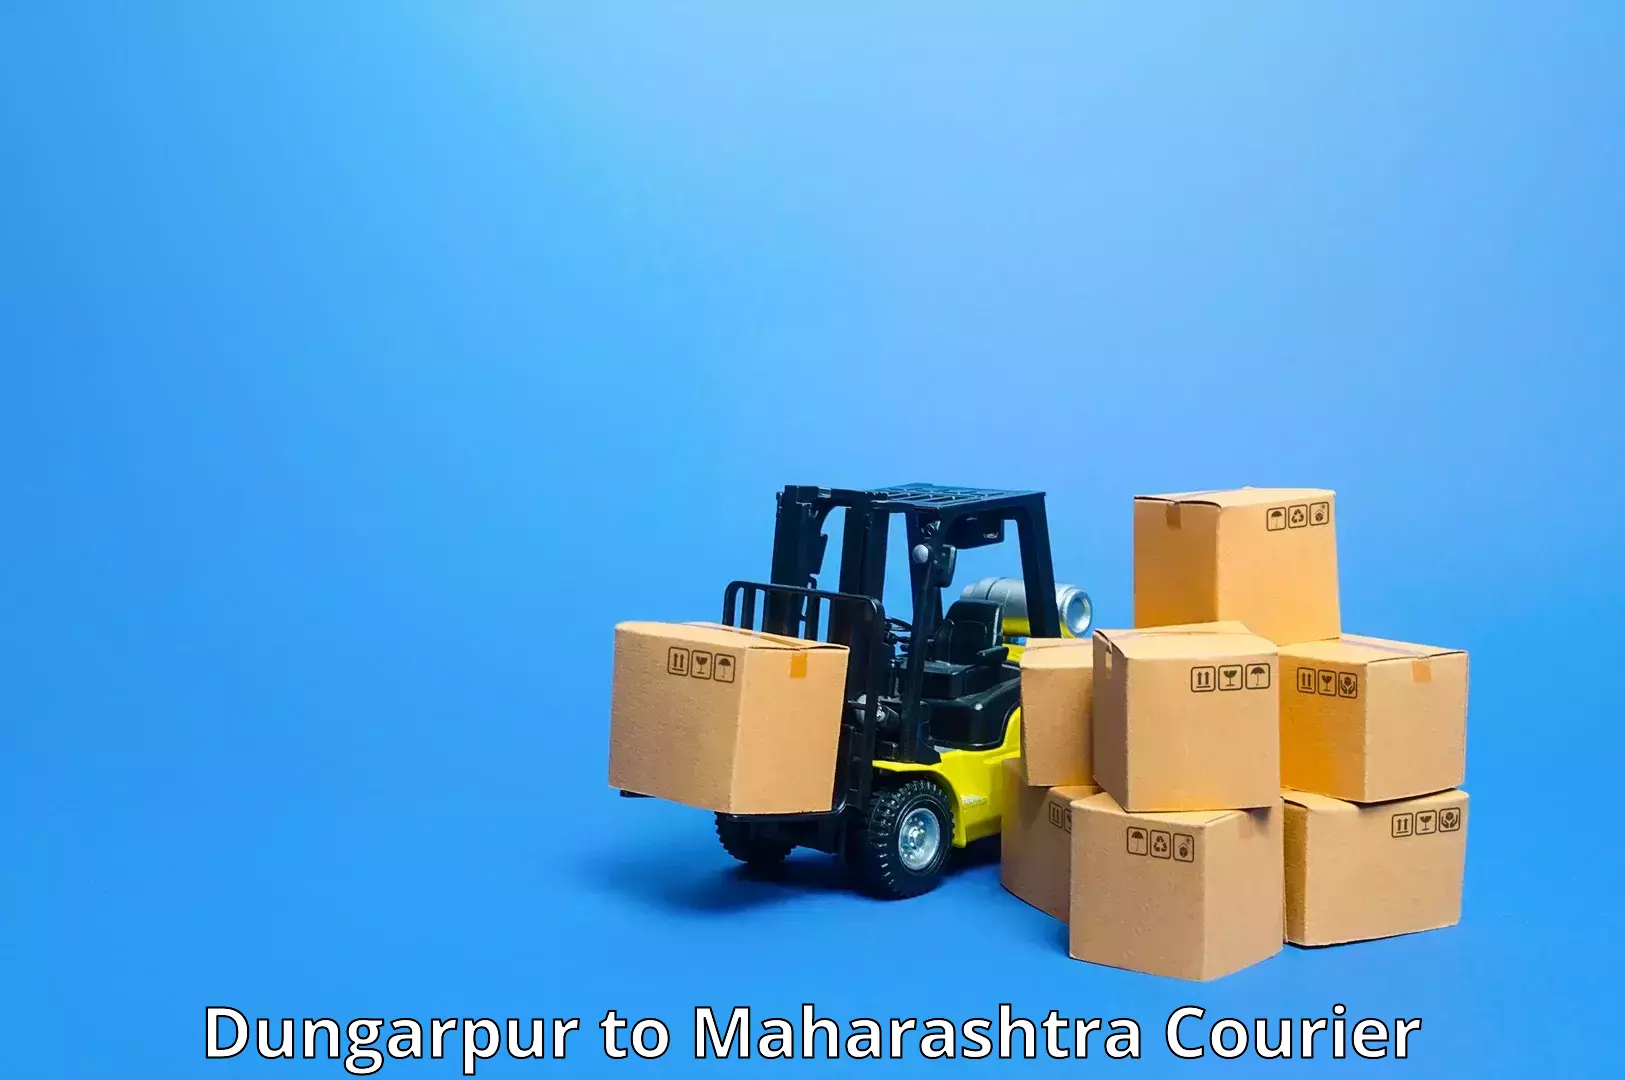 Express mail solutions Dungarpur to Mumbai Port